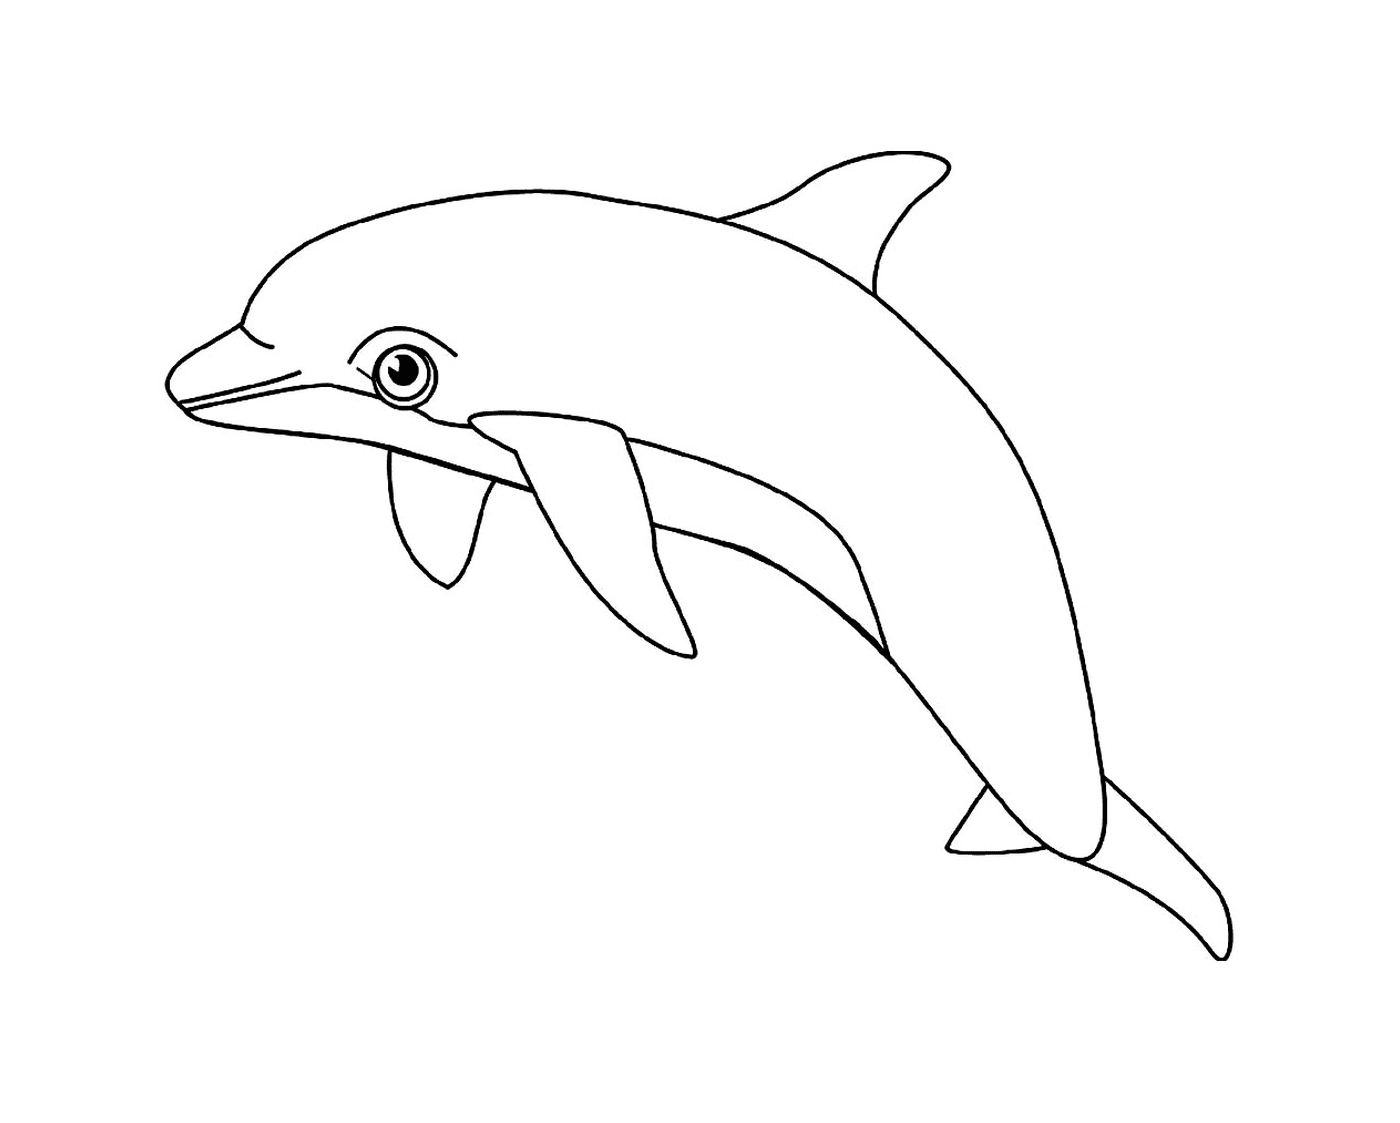  Un animale acquatico: il delfino 